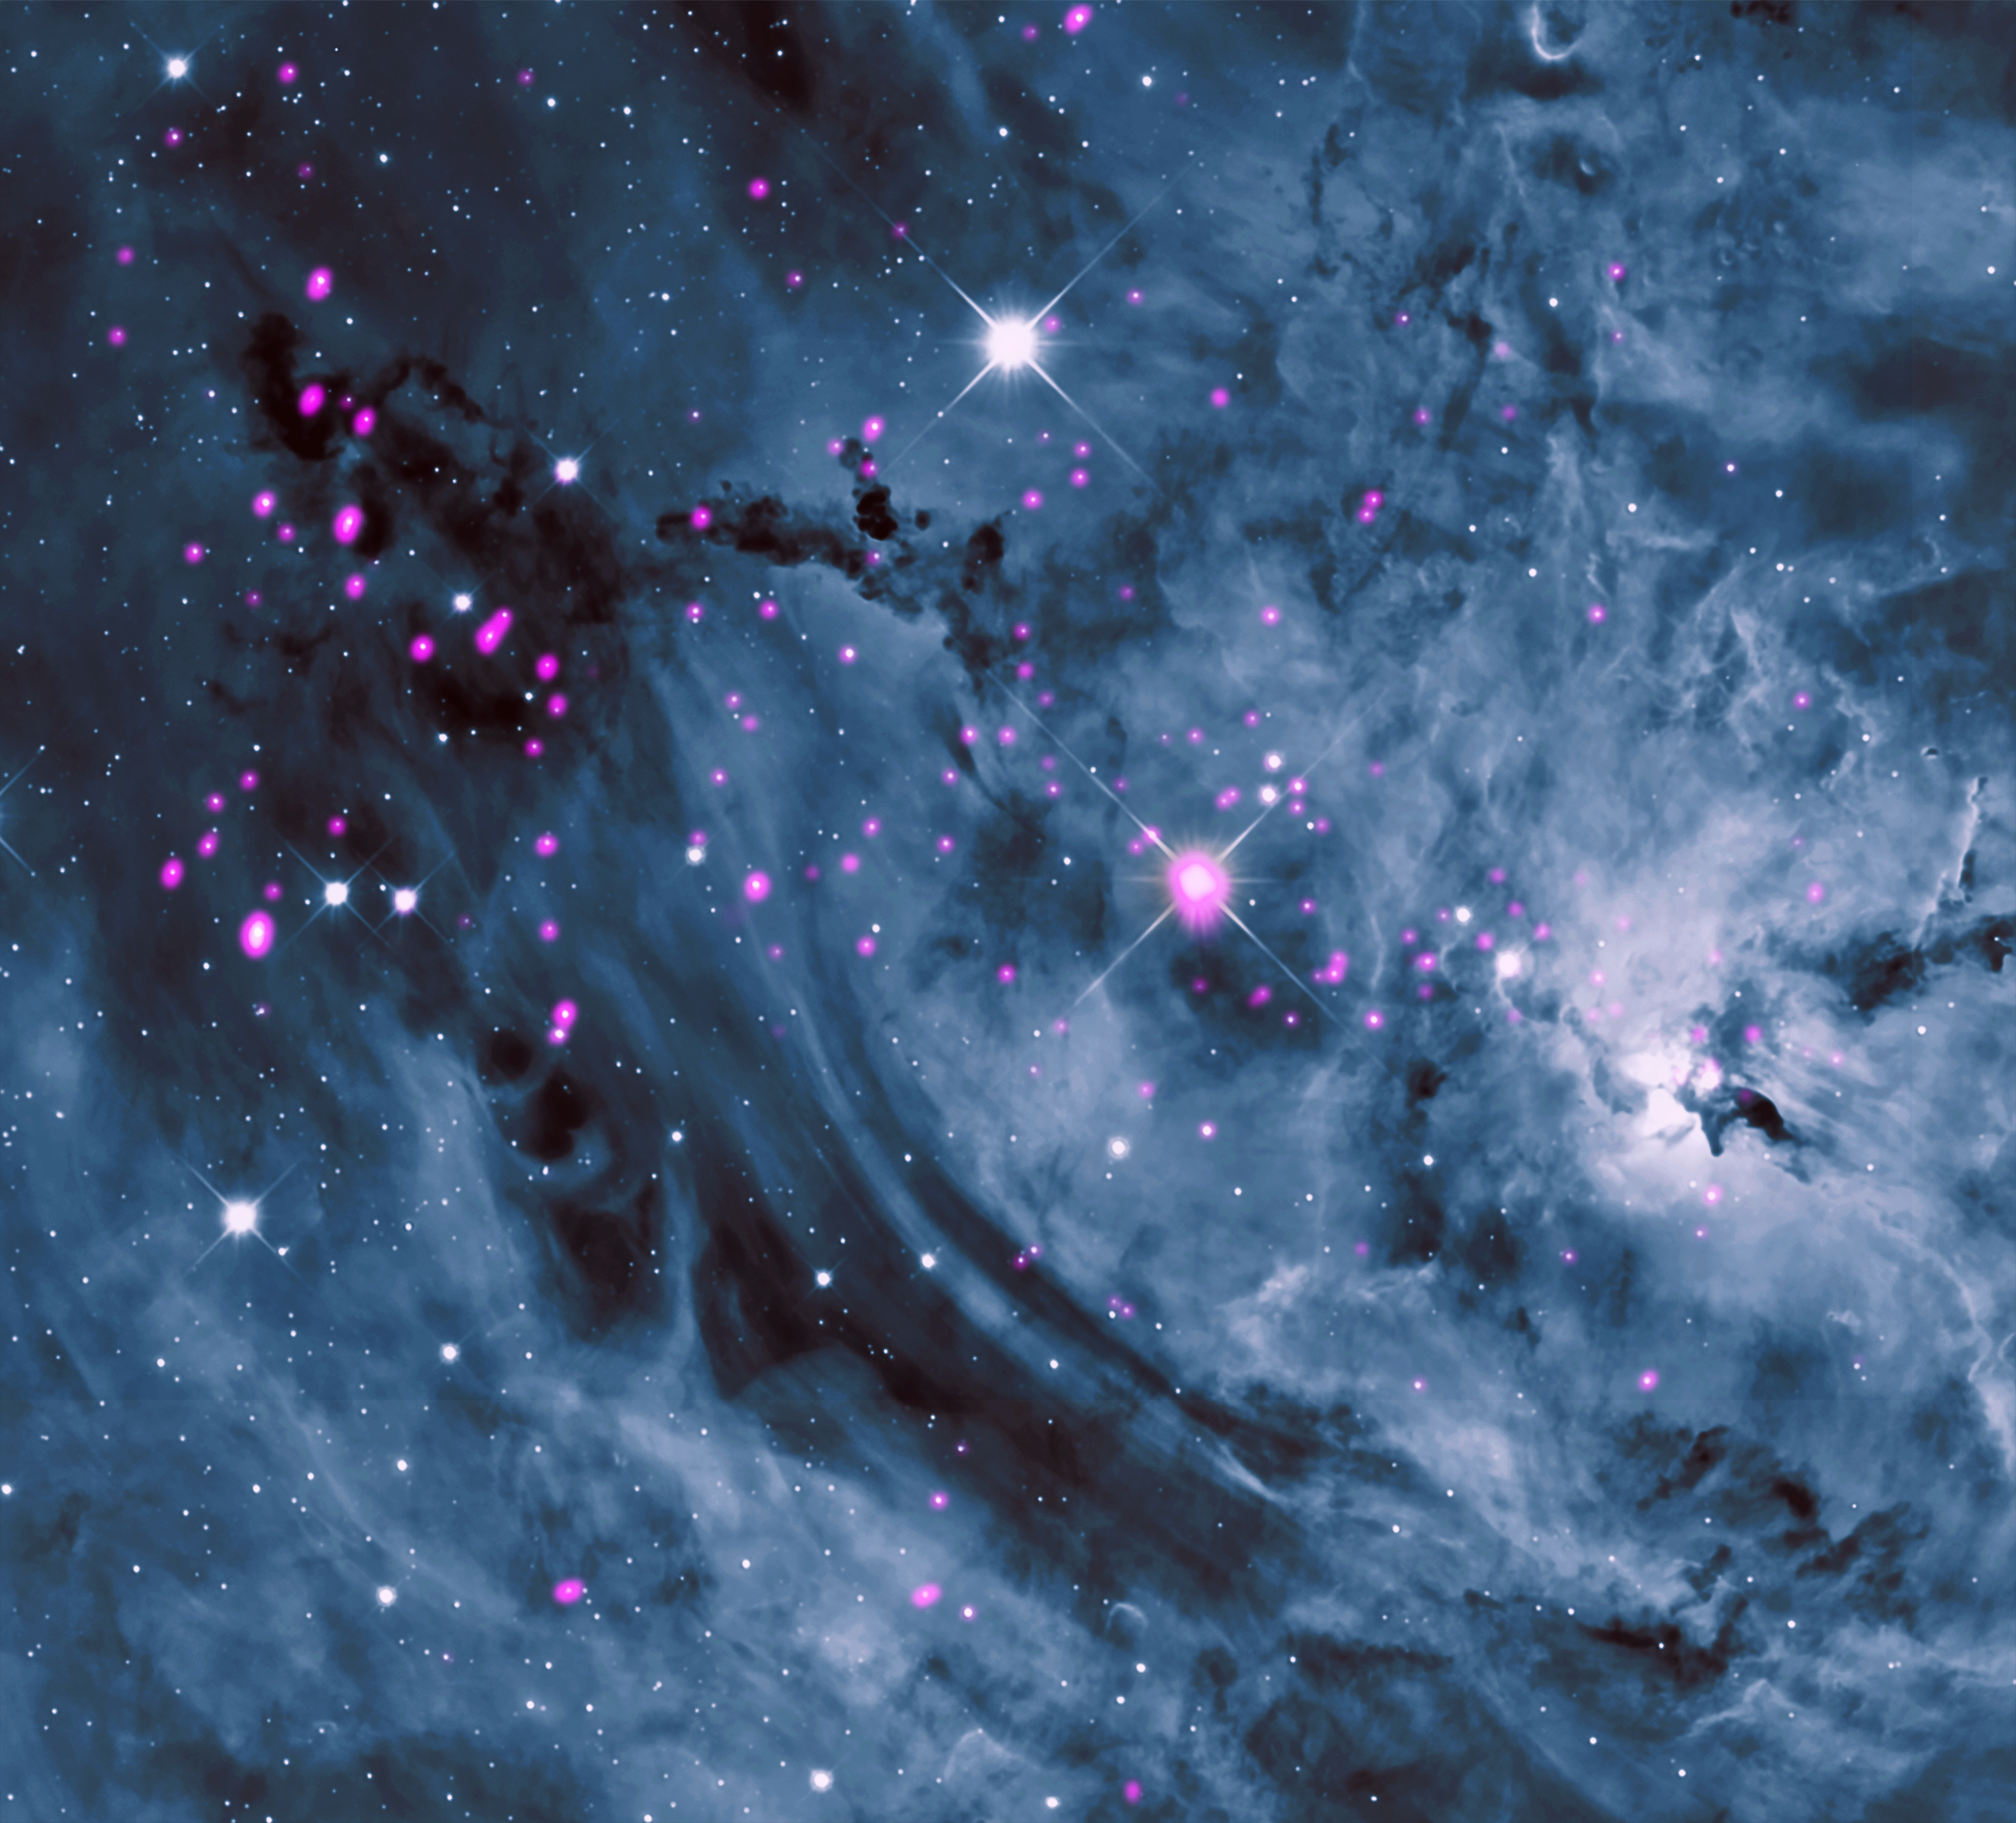 Ученые NASA запечатлели невероятно красивый космический объект (ФОТО)  - фото 2